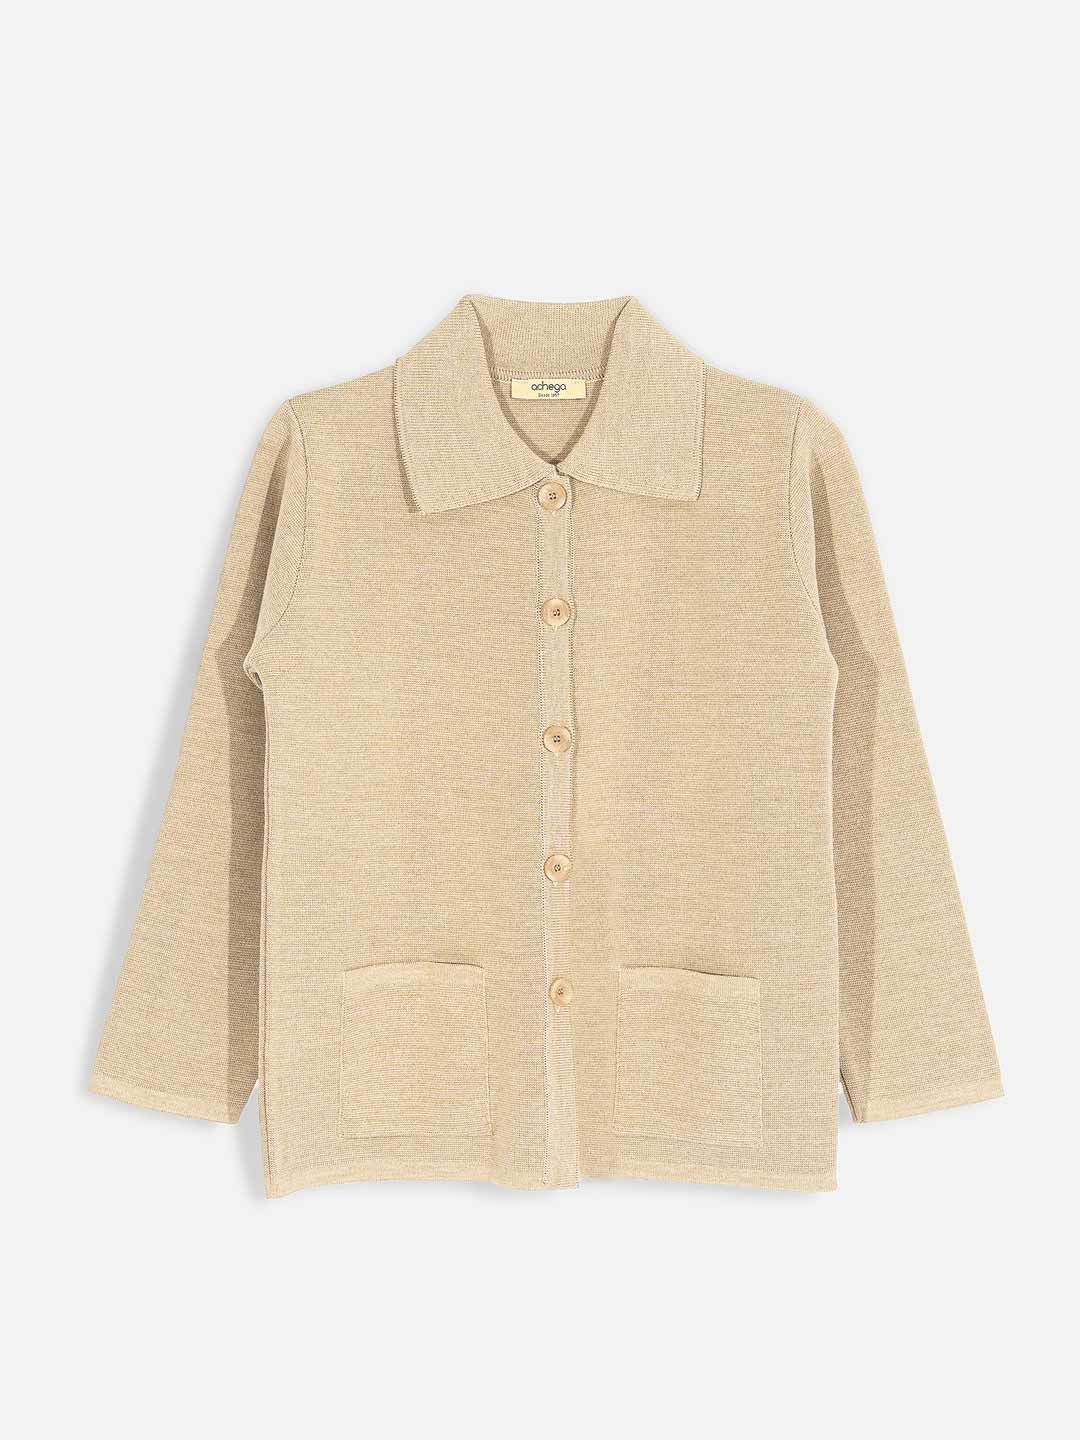 Roma Knit Shirt Collar Coat in Merino Wool